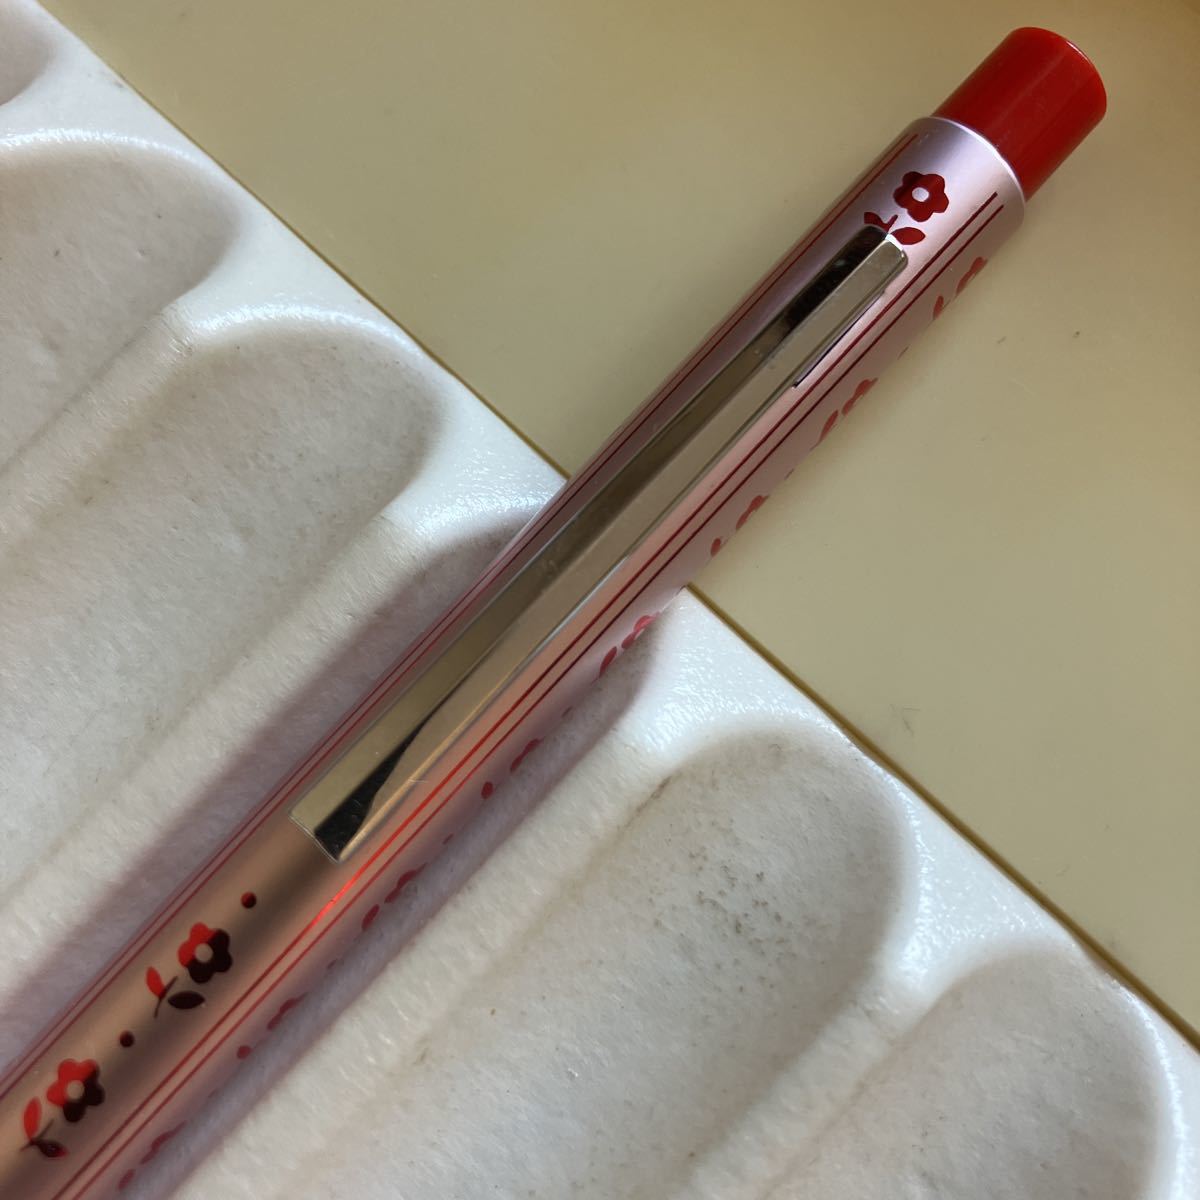  снят с производства неиспользуемый товар Showa Retro MITSUBISHI Mitsubishi карандаш название модели неизвестен механический карандаш 0.5. нержавеющая сталь цветочный принт 